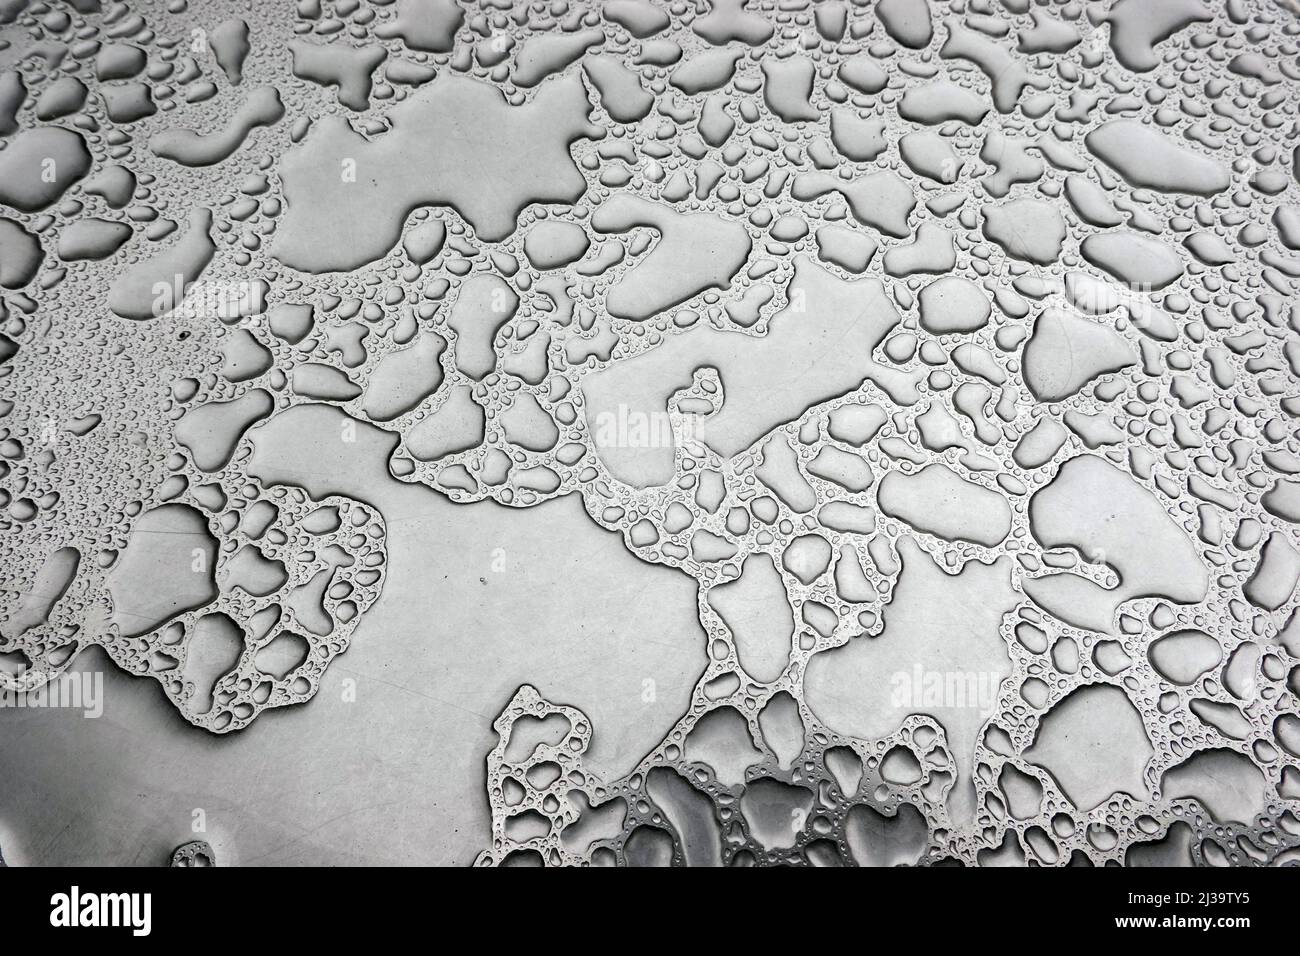 Regenwasser auf einem Bistrotisch bilden ein abstraktes Muster Stock Photo